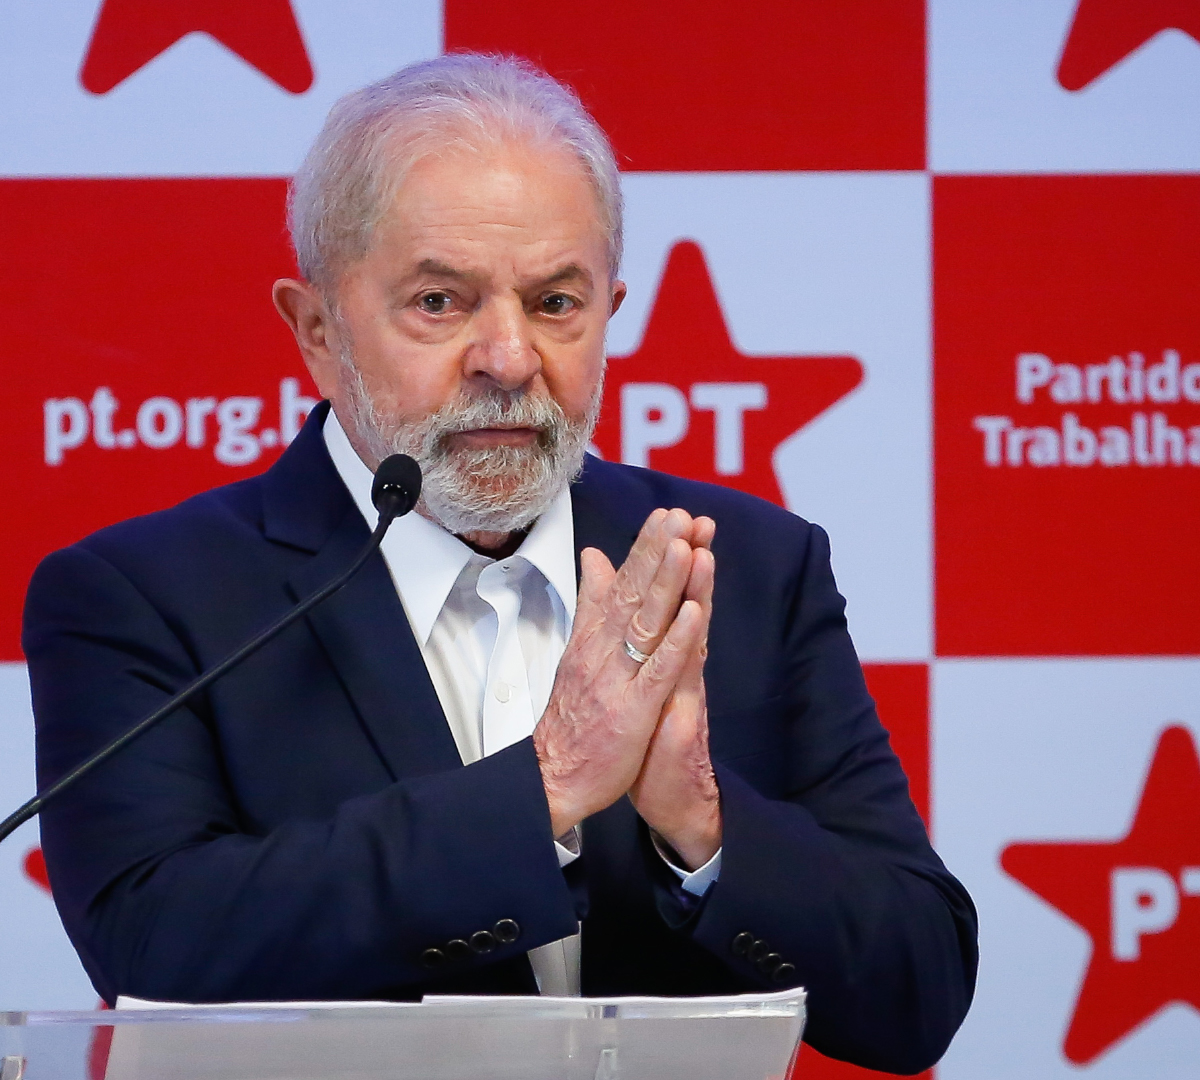 Pt Lança Candidatura De Lula à Presidência Nesta Quinta Feira 21 Rádio Bom Sucesso